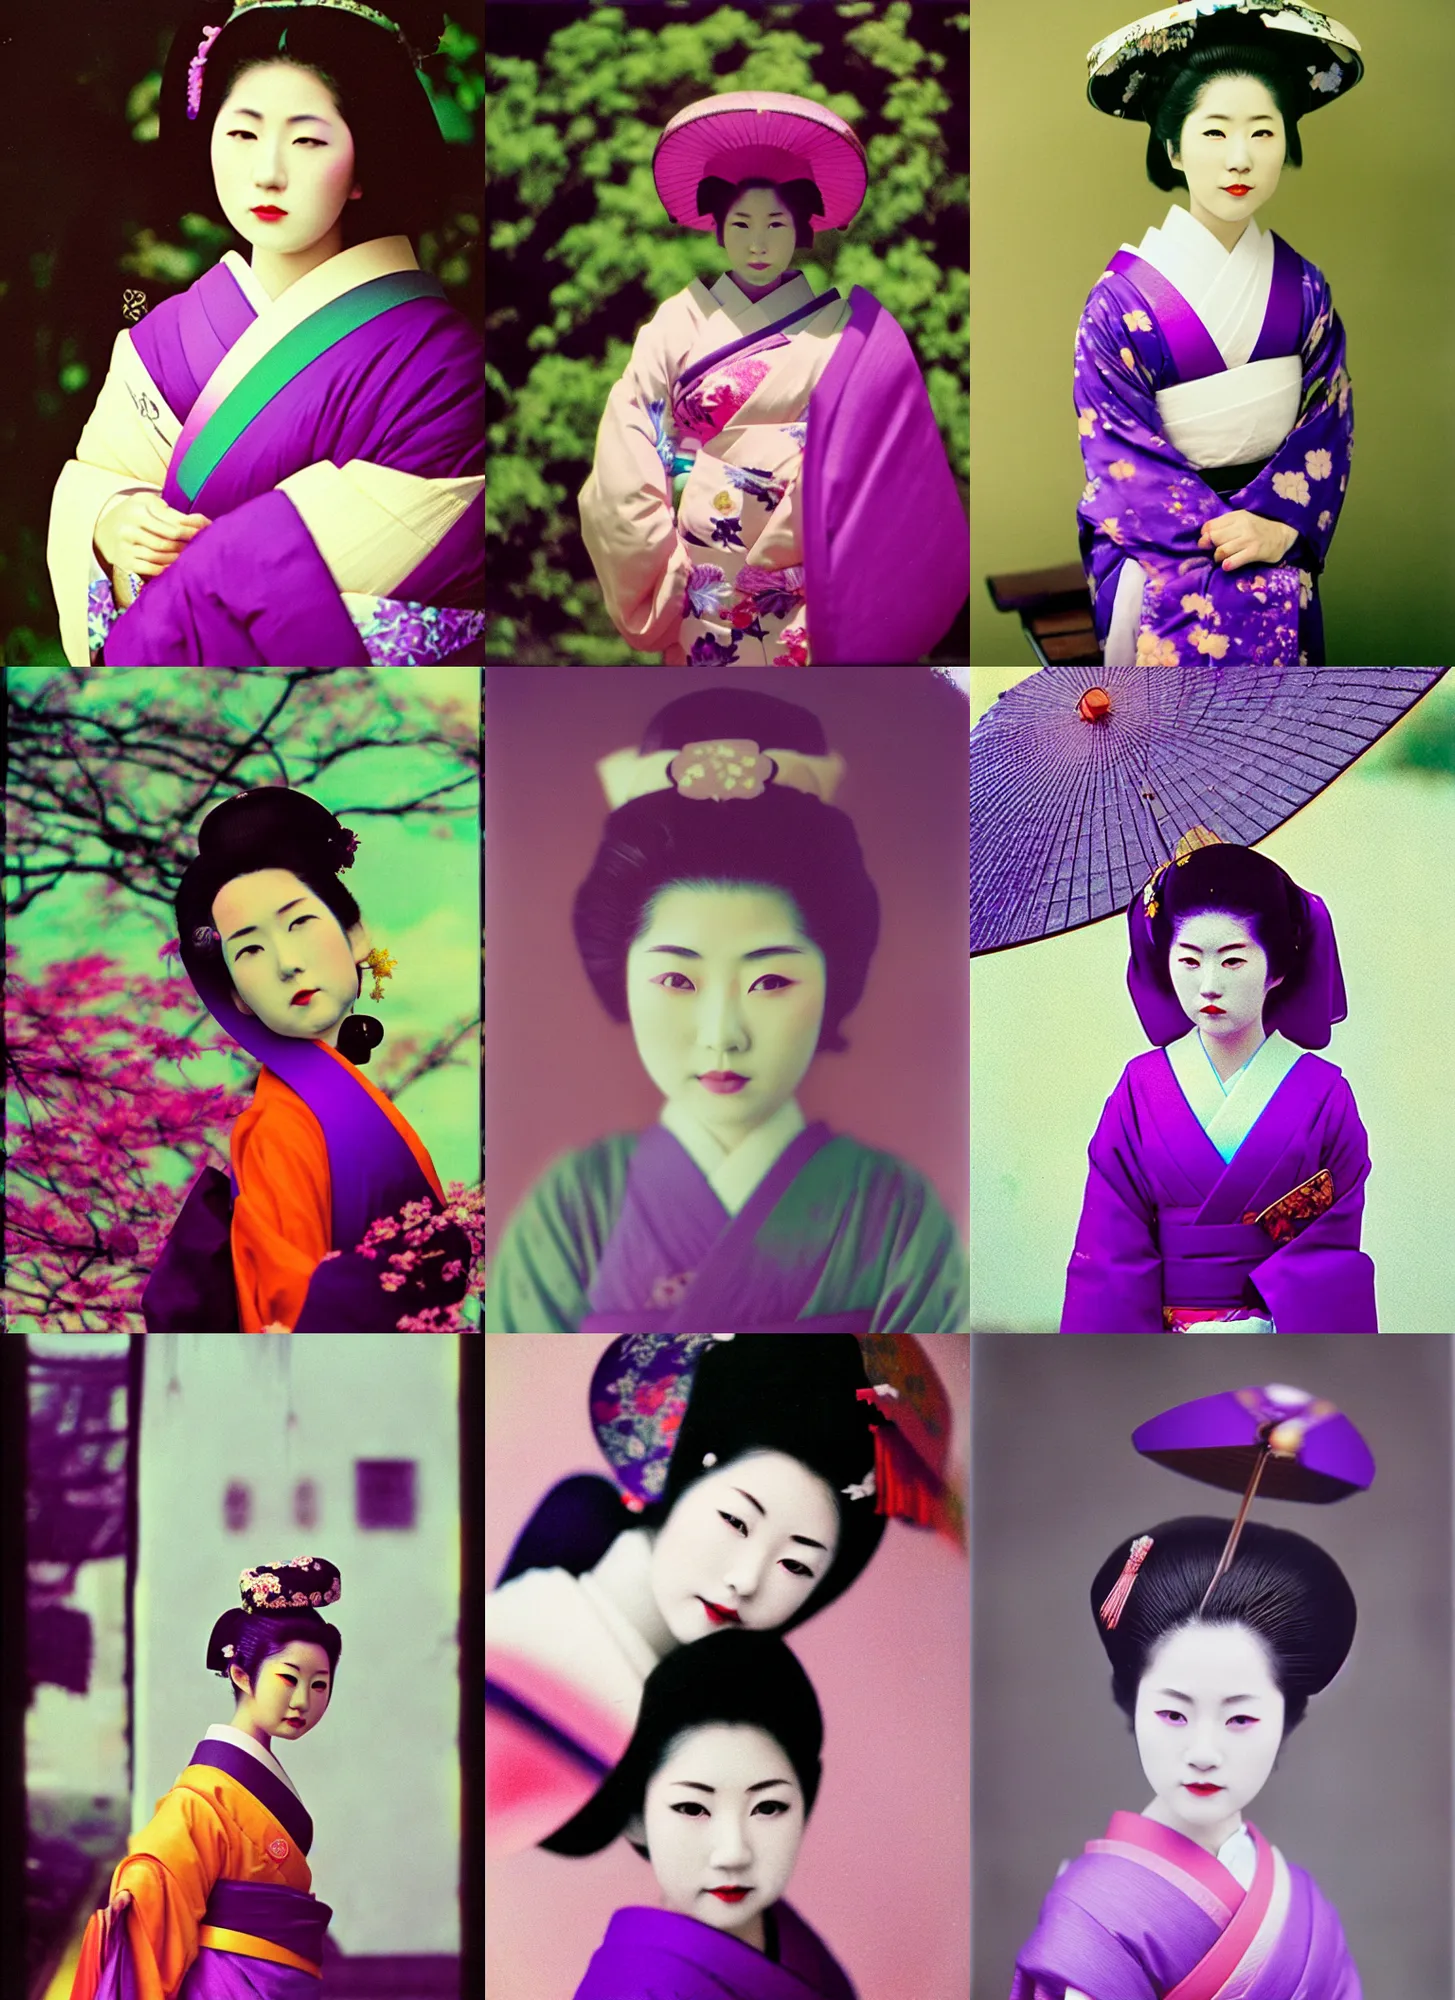 Prompt: Portrait Photograph of a Japanese Geisha Lomochrome Purple 100-400